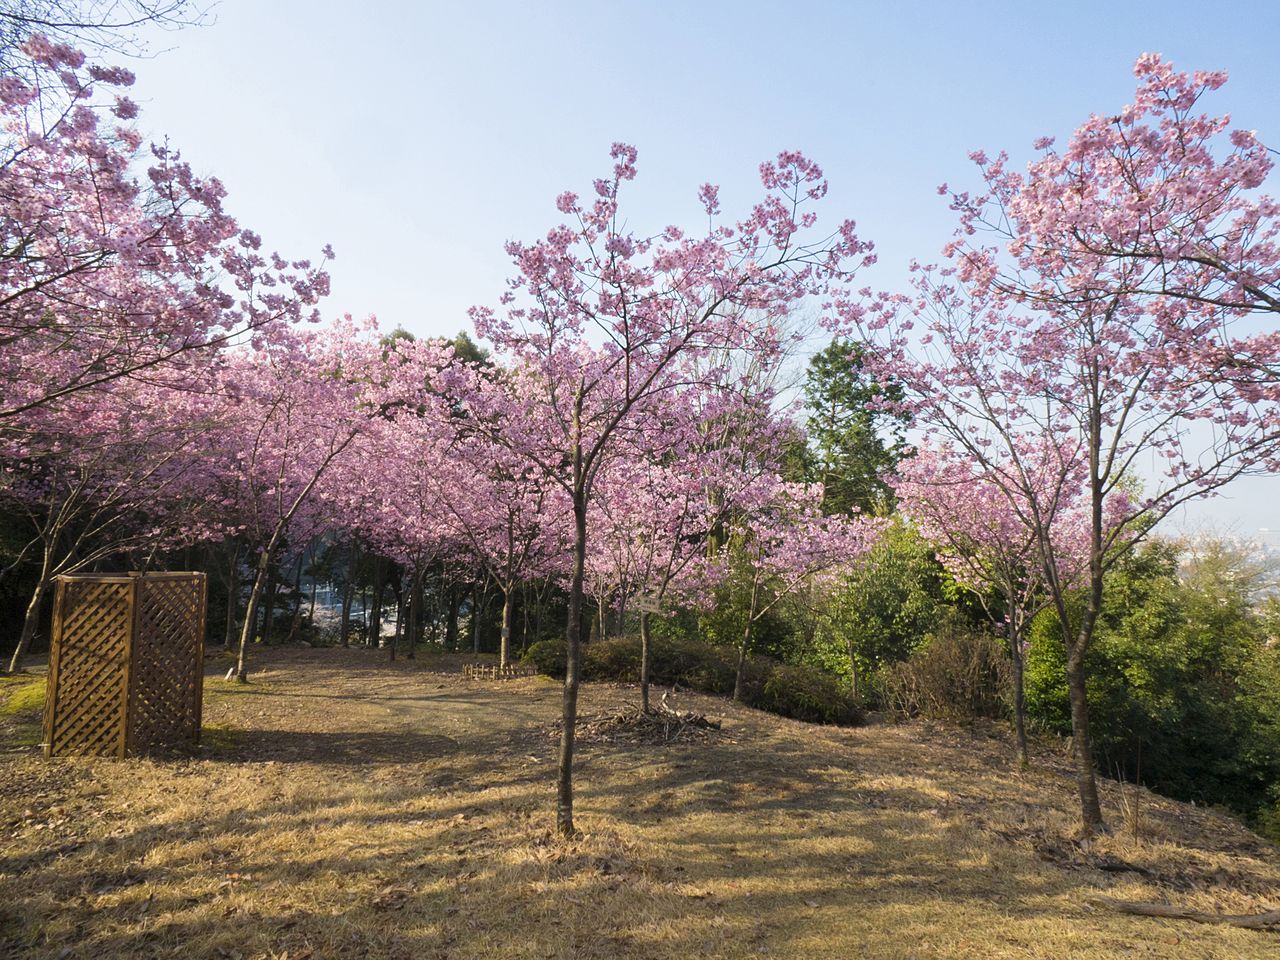 Сад сакуры ёко покрывает склон холма розовой пеной цветов